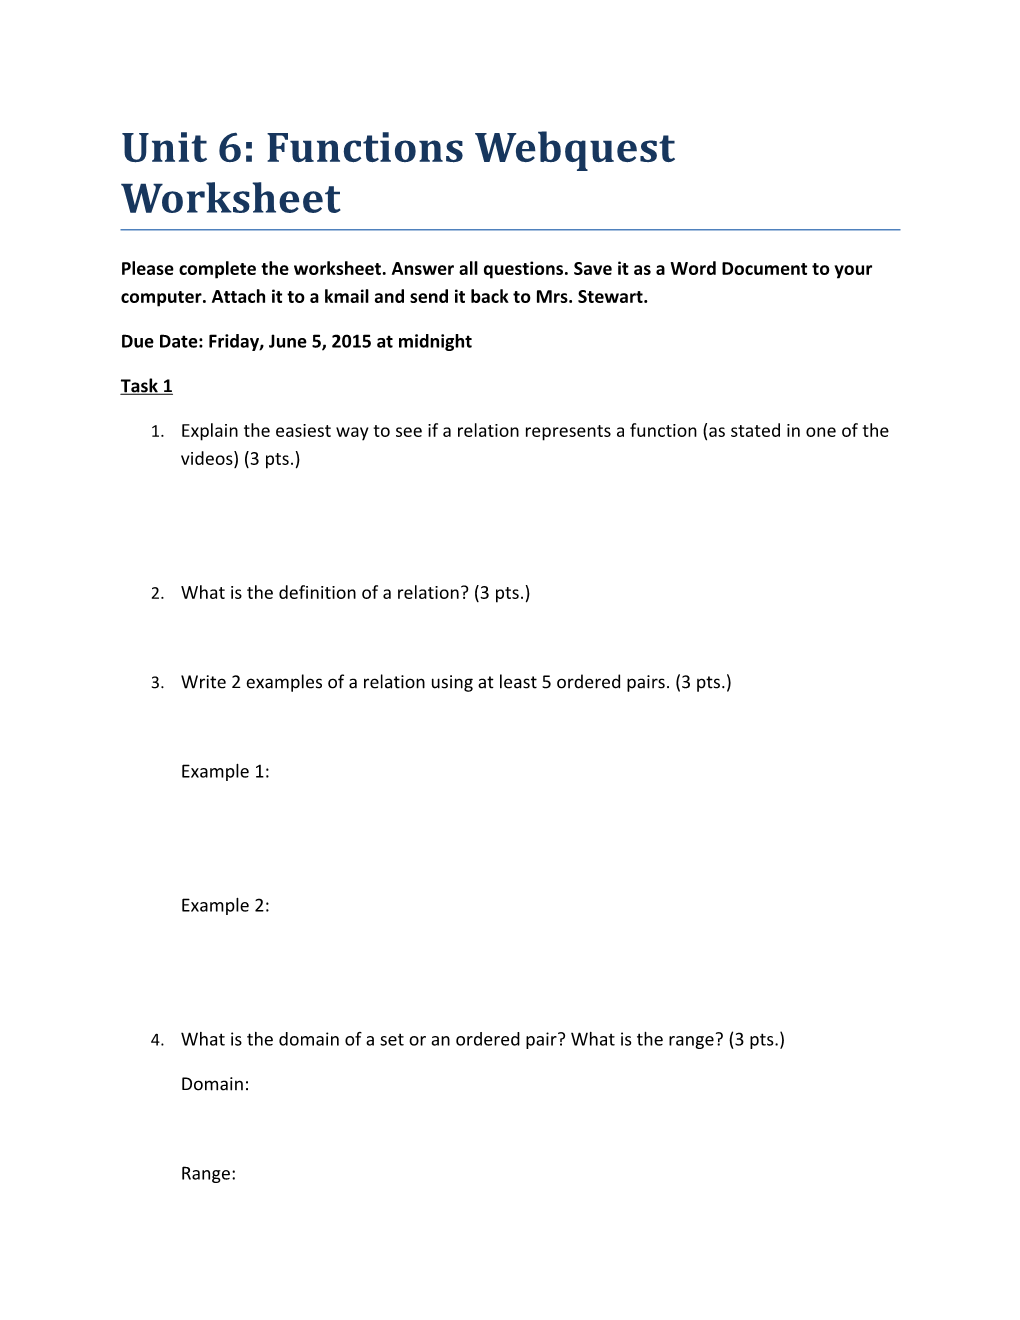 Unit 6: Functions Webquest Worksheet